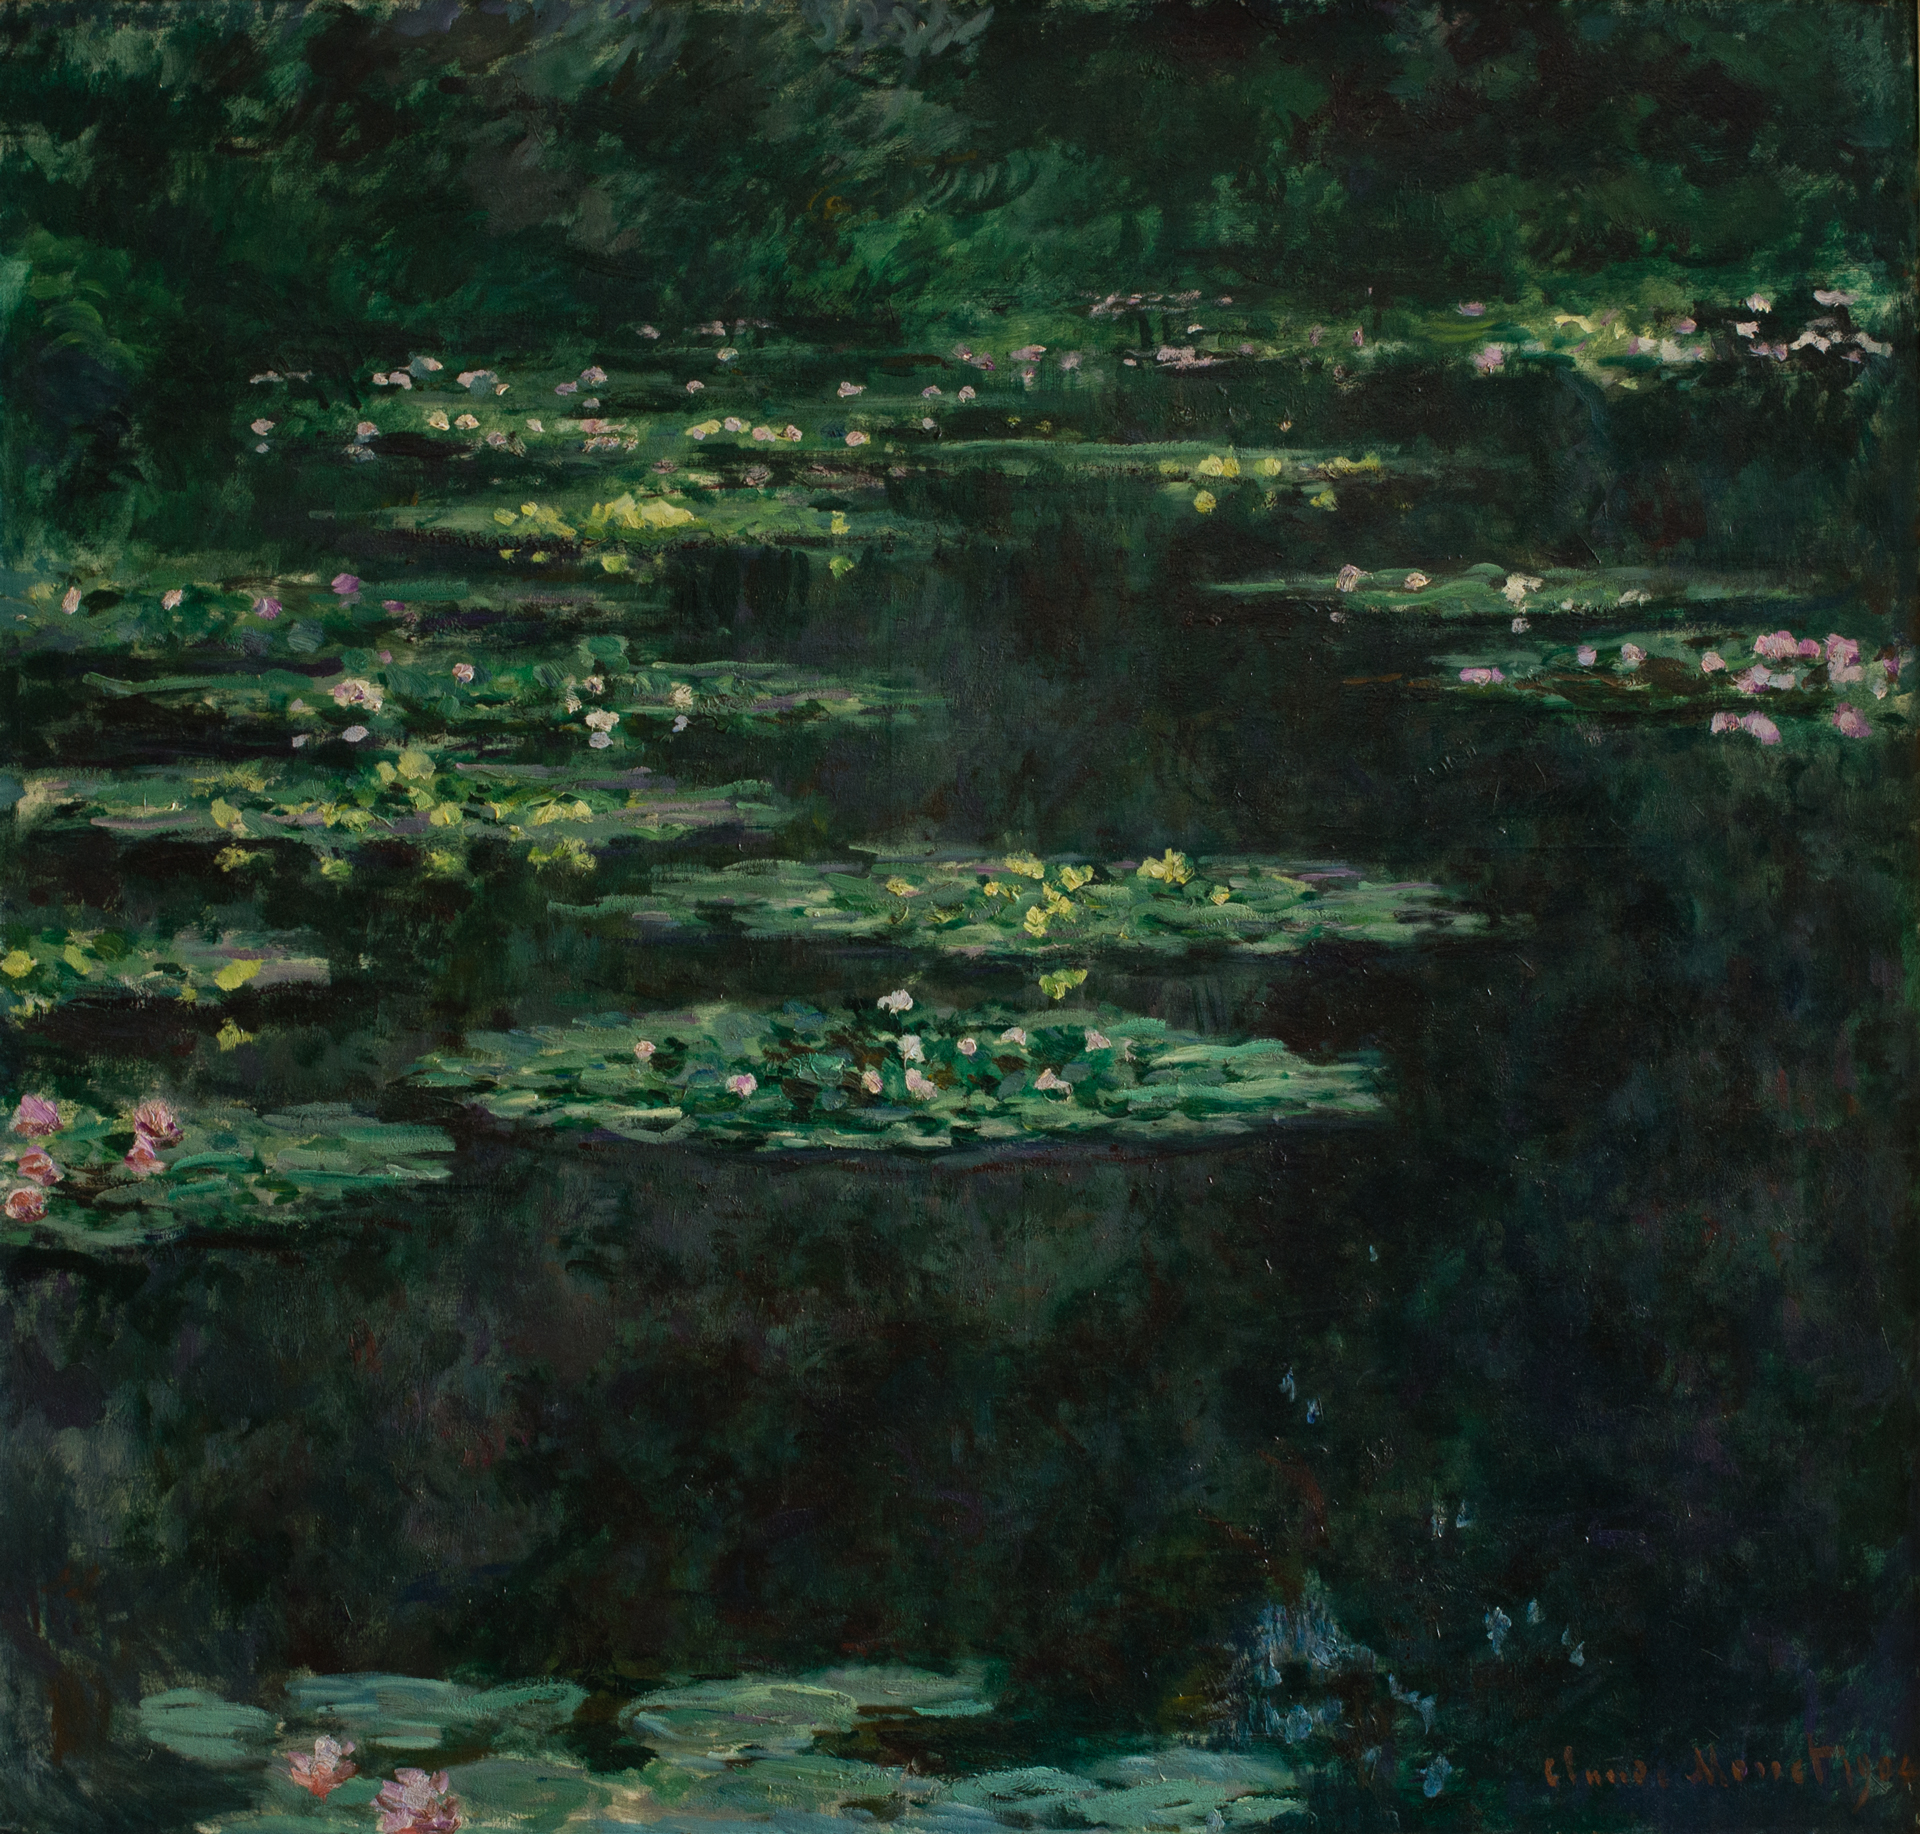 Claude Monet, "Les Nymphéas", © MuMa, David Fogel